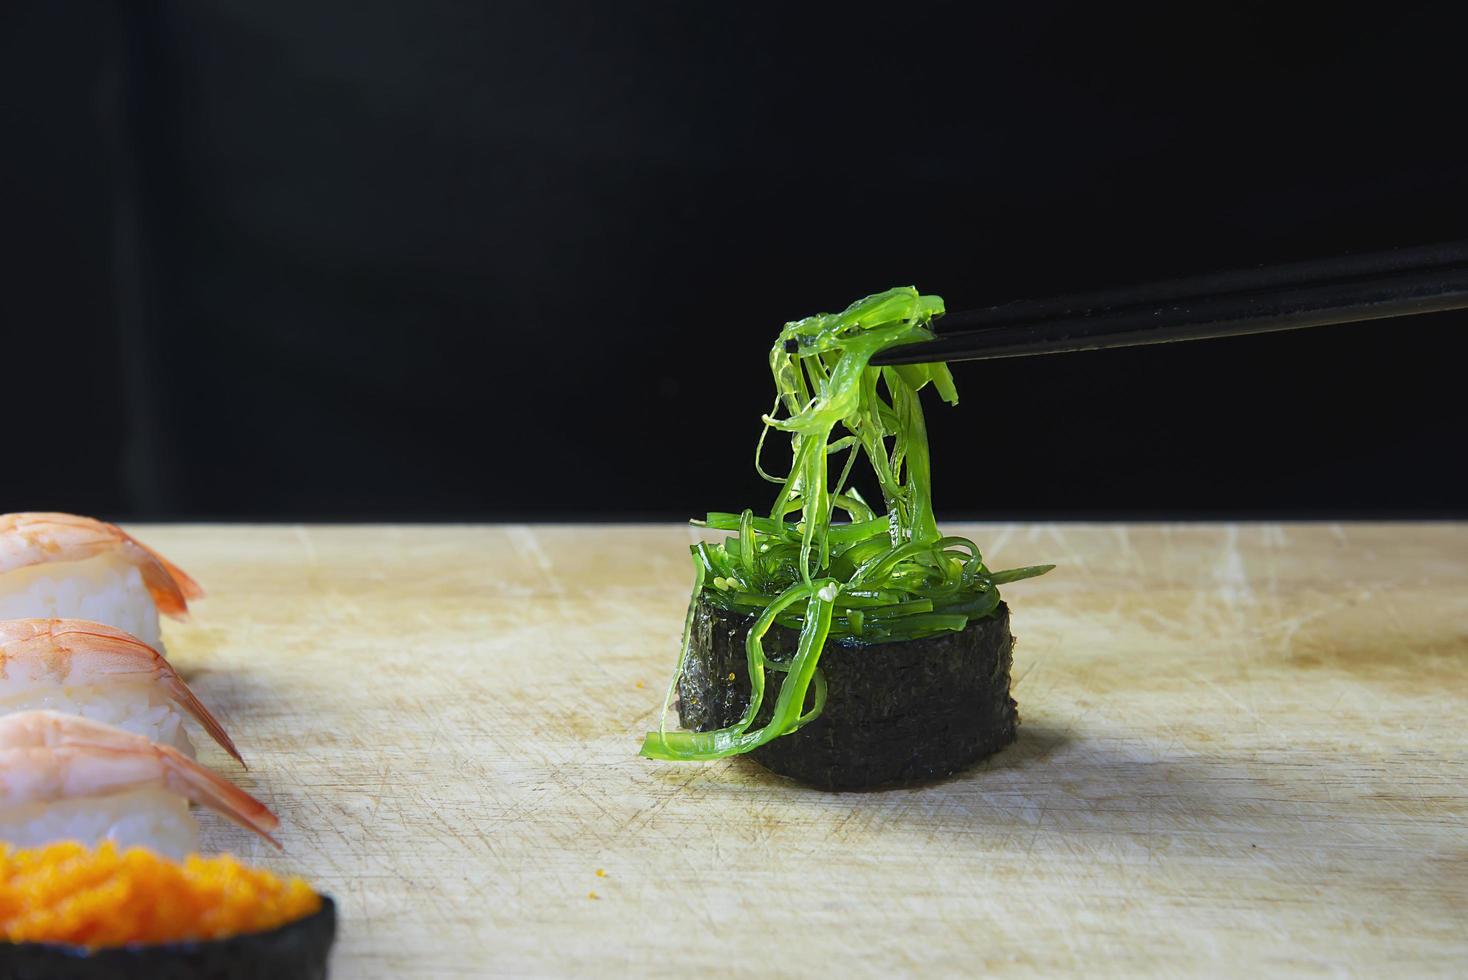 Japanische Maki-Sushi-Rolle, die im orientalischen Restaurant serviert wird, der Küchenchef bereitet ein japanisches traditionelles Kochmenü zu, verschiedene verschiedene gemischte Luxus-Mischkonzepte für gesunde Ernährung foto